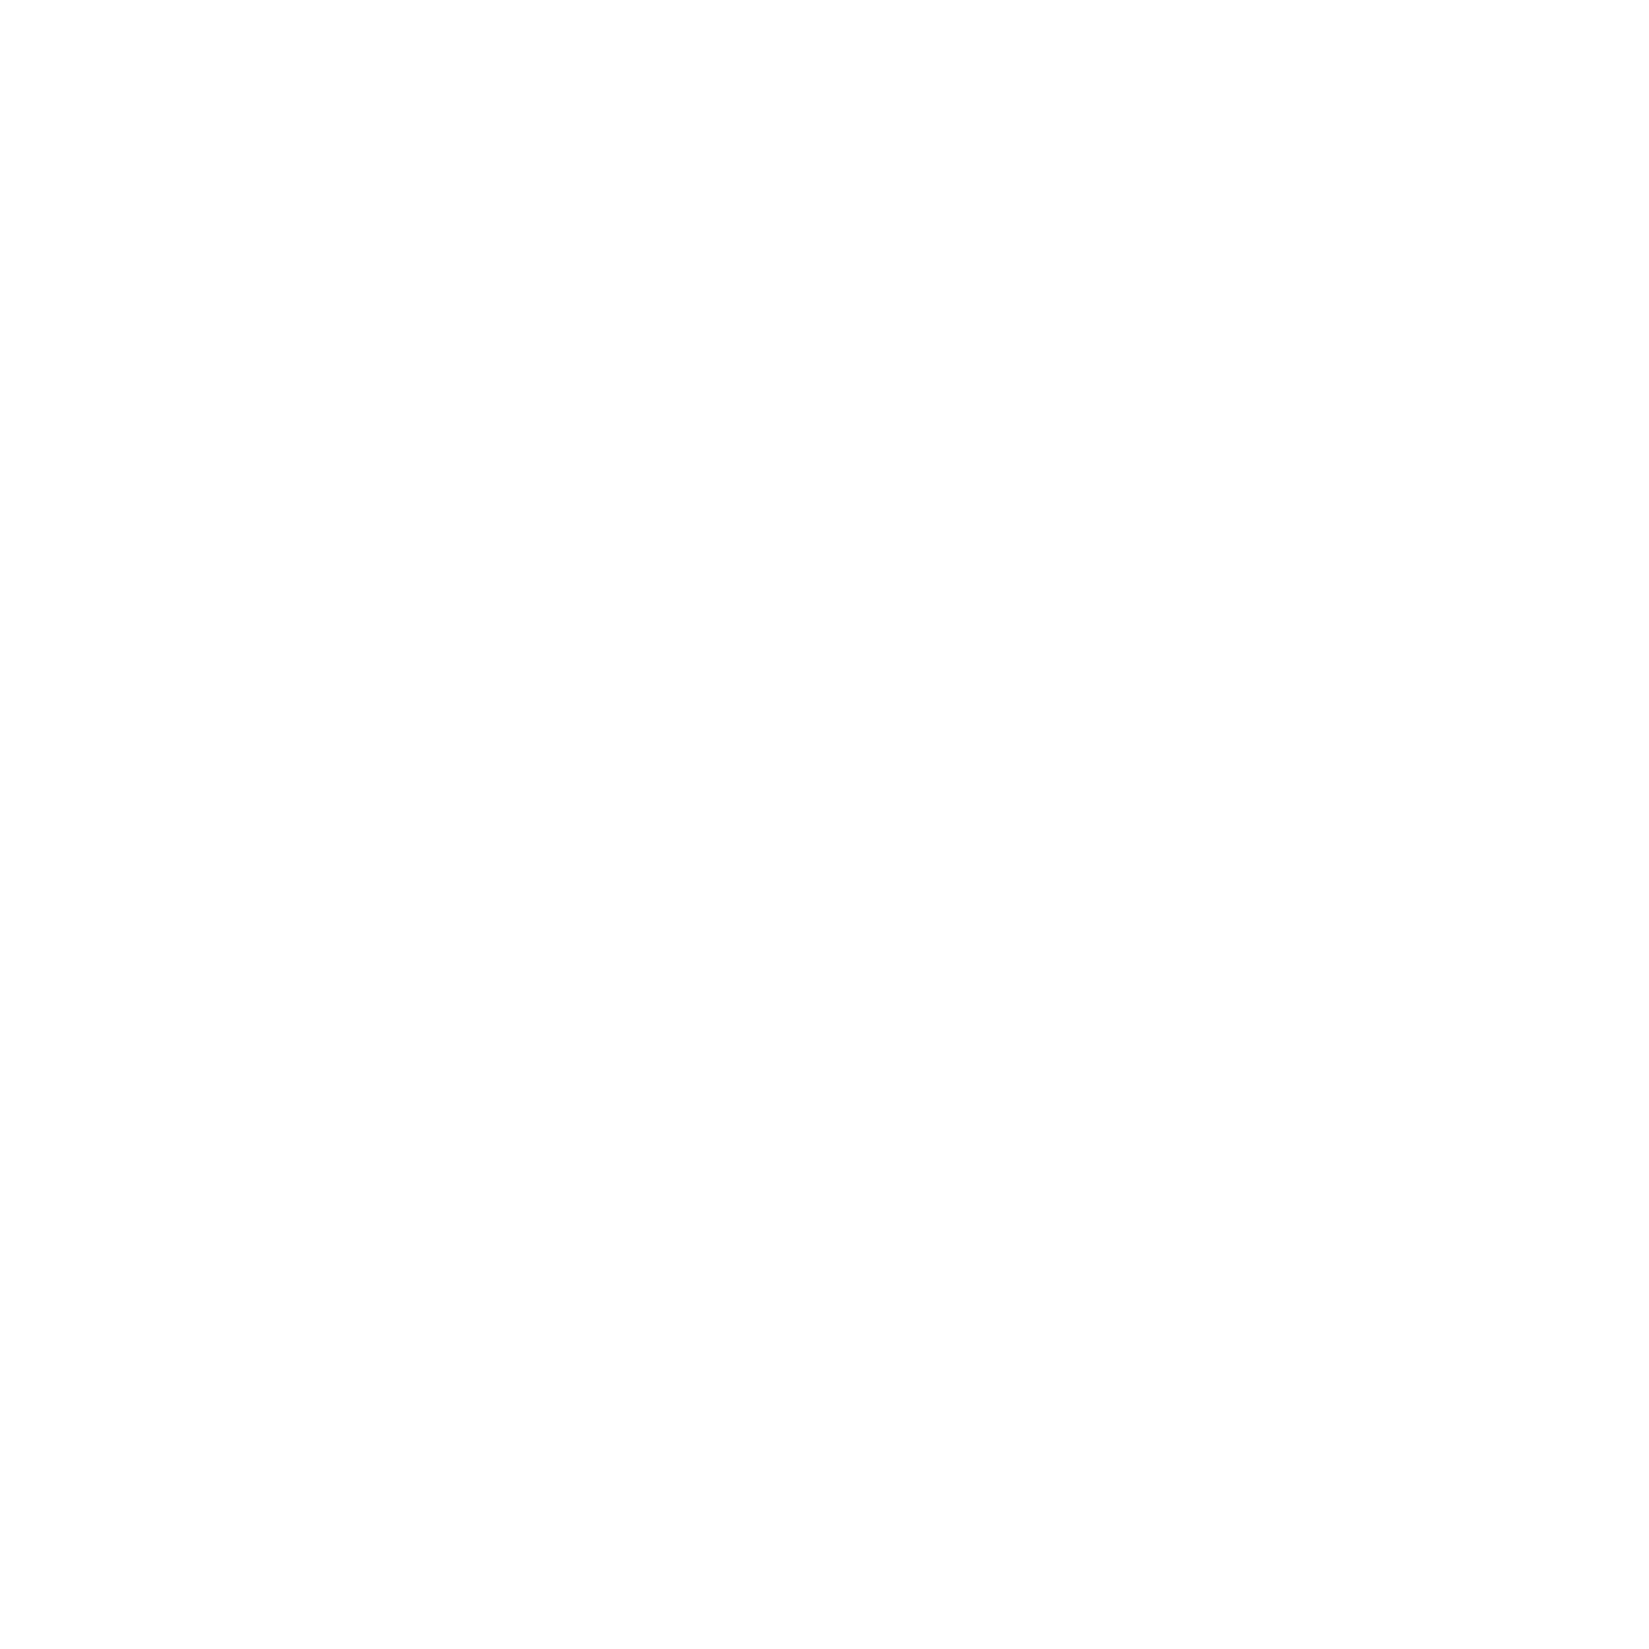 NPR Logo - WWNO | Your source for NPR News, Music & Culture